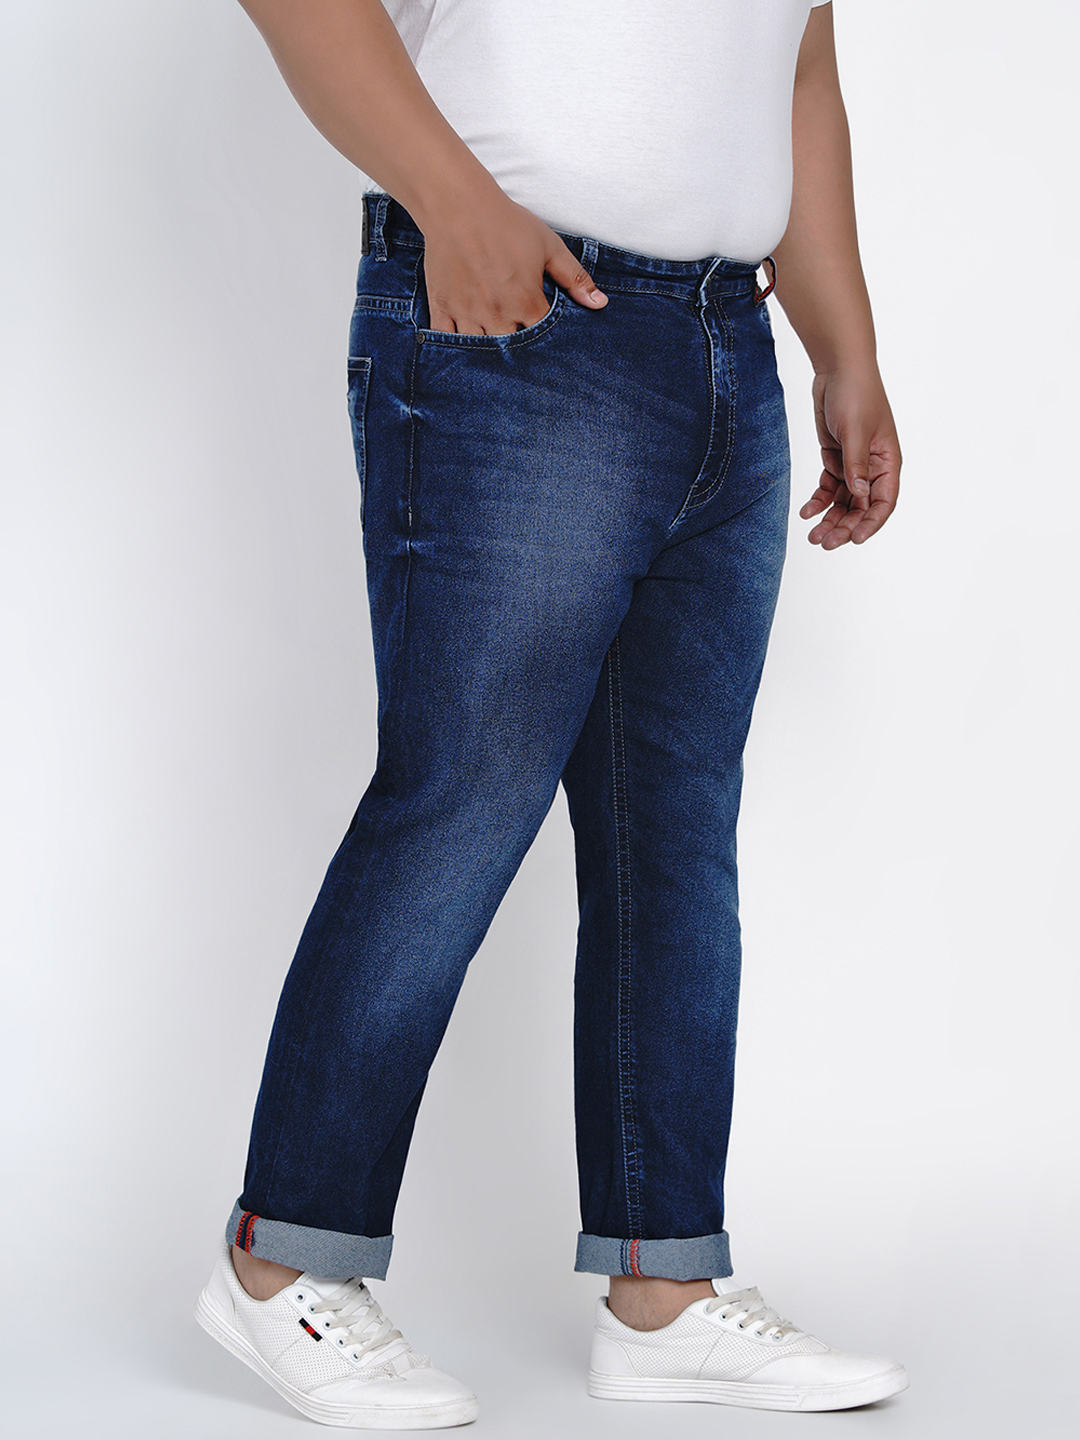 affordables/jeans/JPJ2011/jpj2011-3.jpg